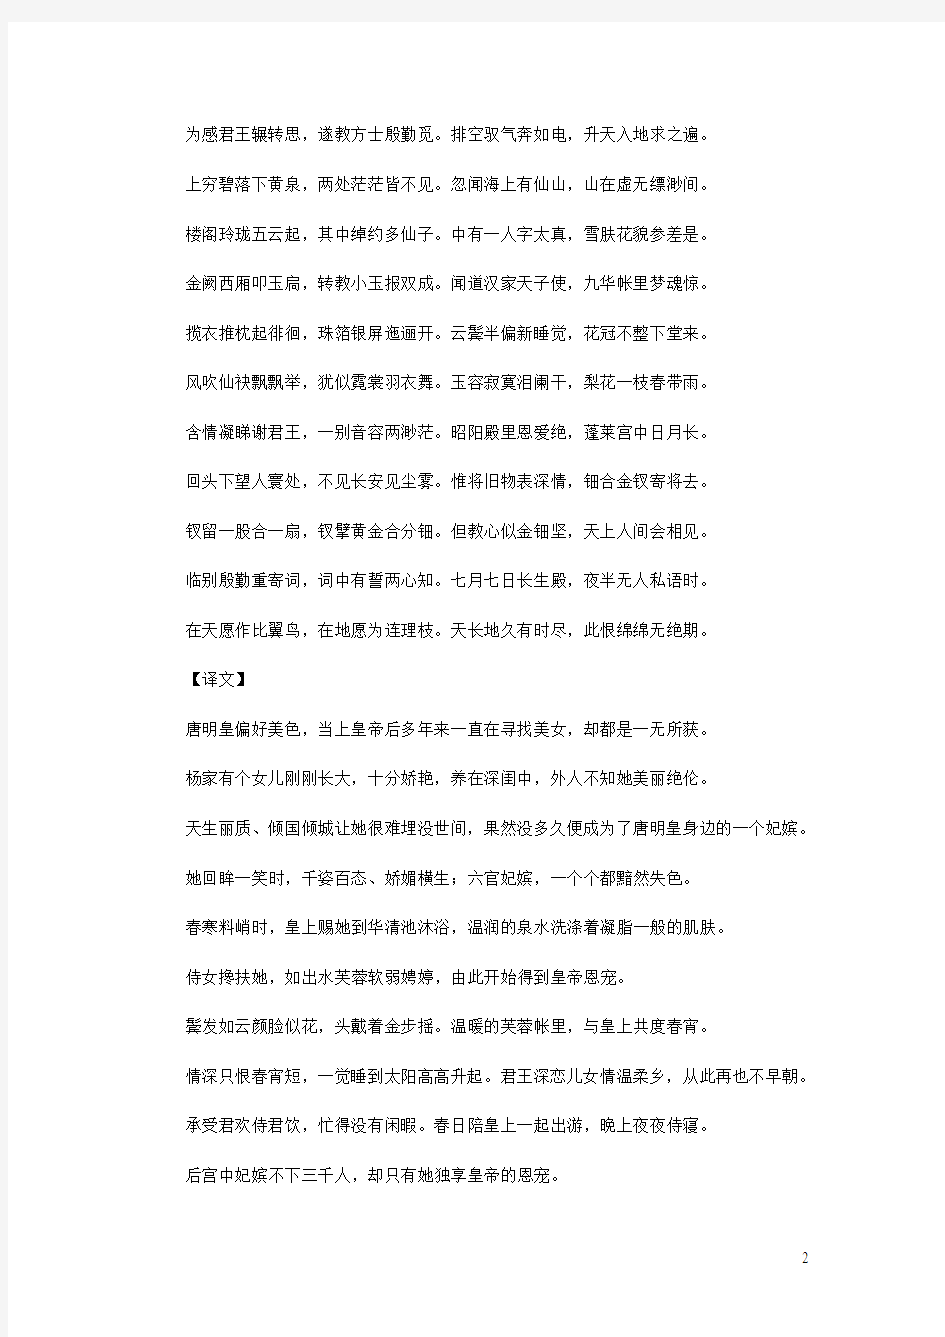 初中语文古诗文赏析白居易《长恨歌》原文、译文及艺术特色赏析